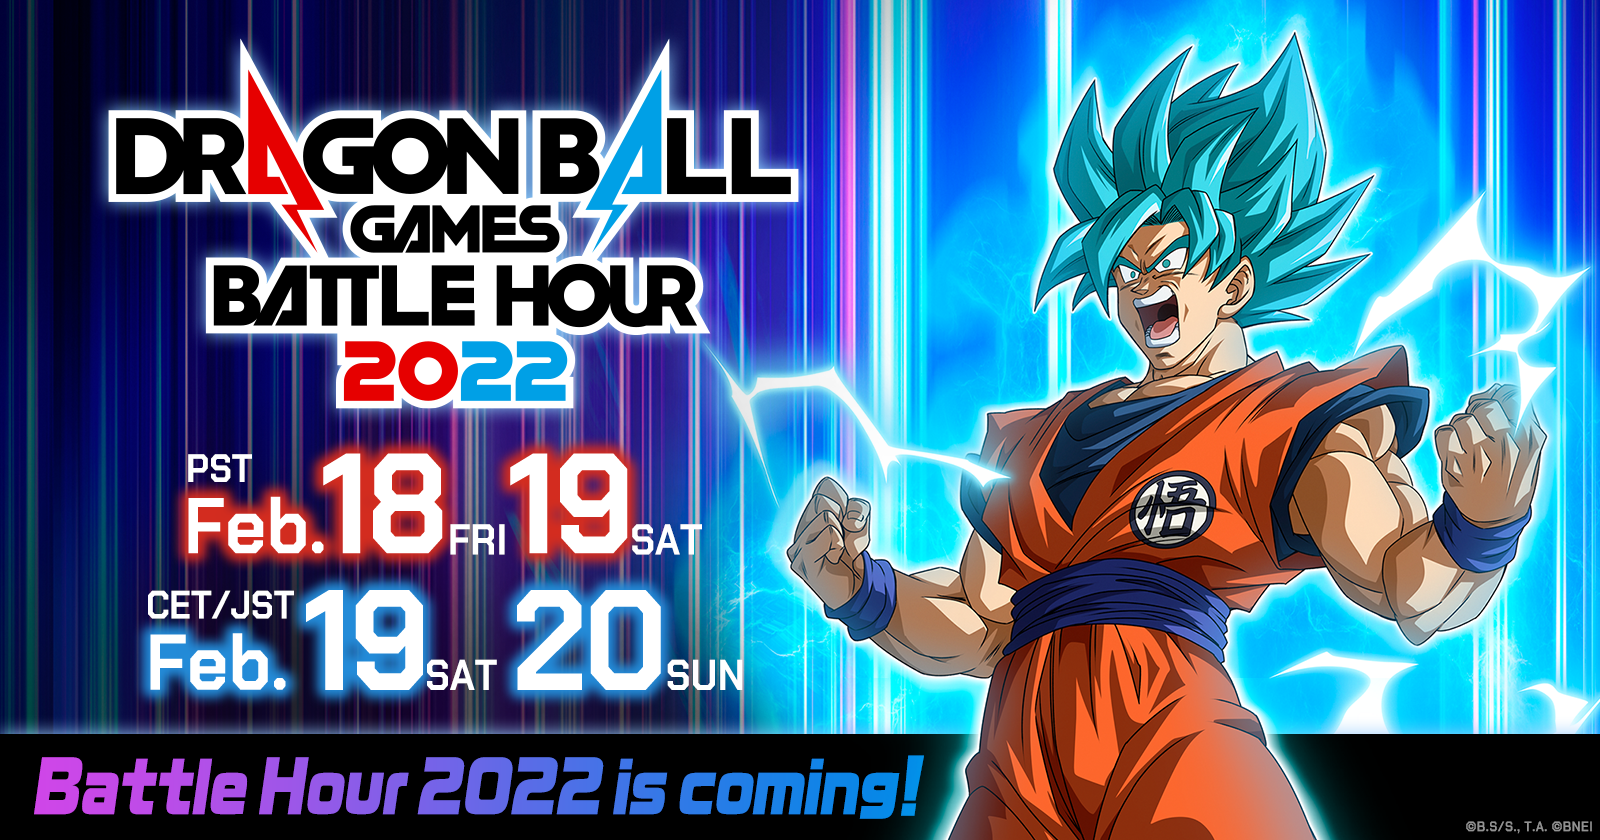 L'événement mondial de streaming en ligne "DRAGON BALL Games Battle Hour 2022" aura lieu du 19 au 20 février JST !!